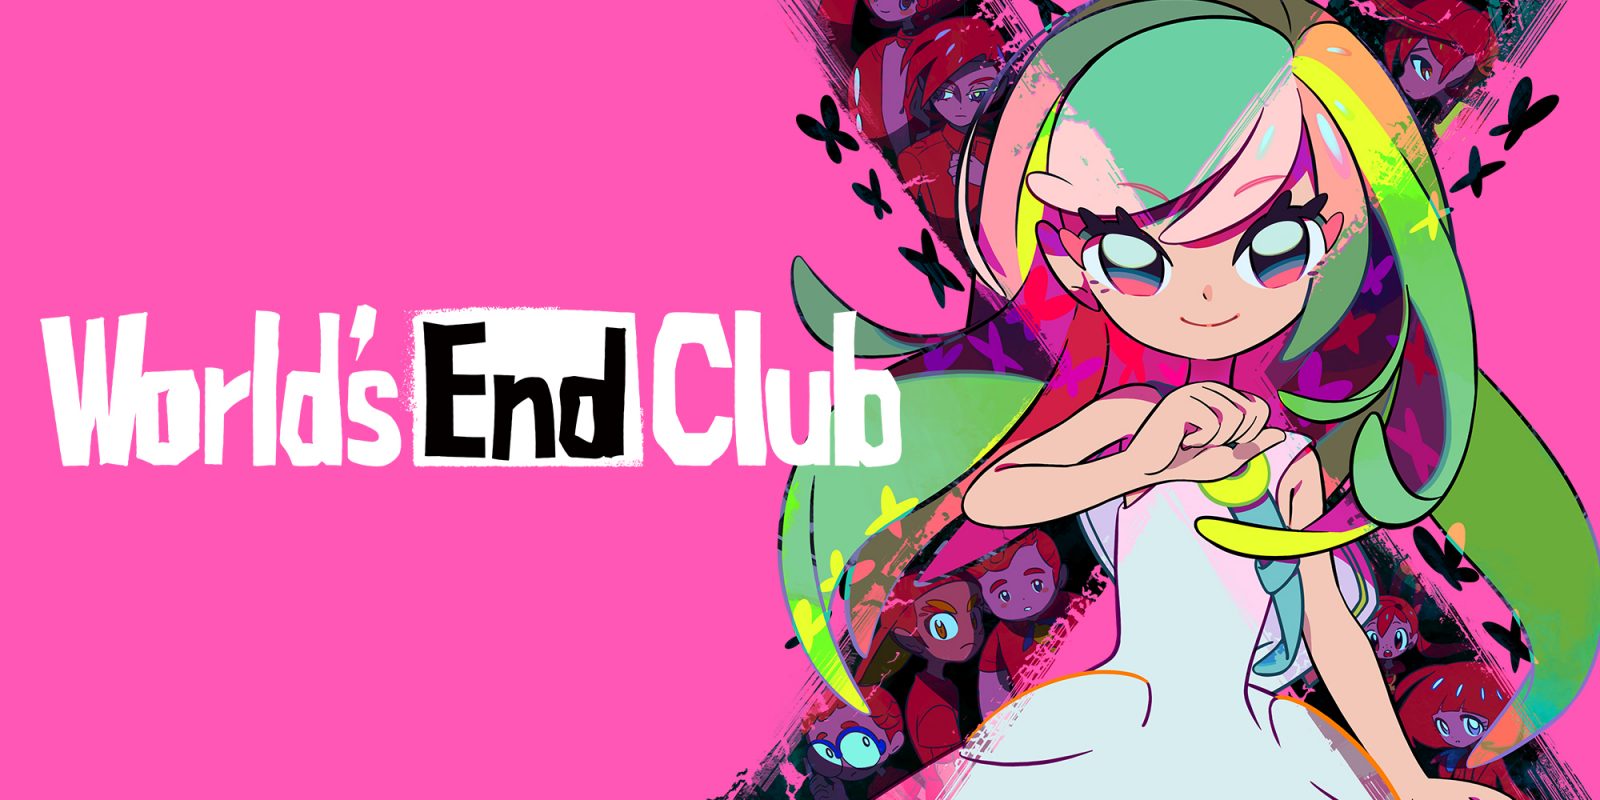 World's End Club ganha novo trailer e demo disponível